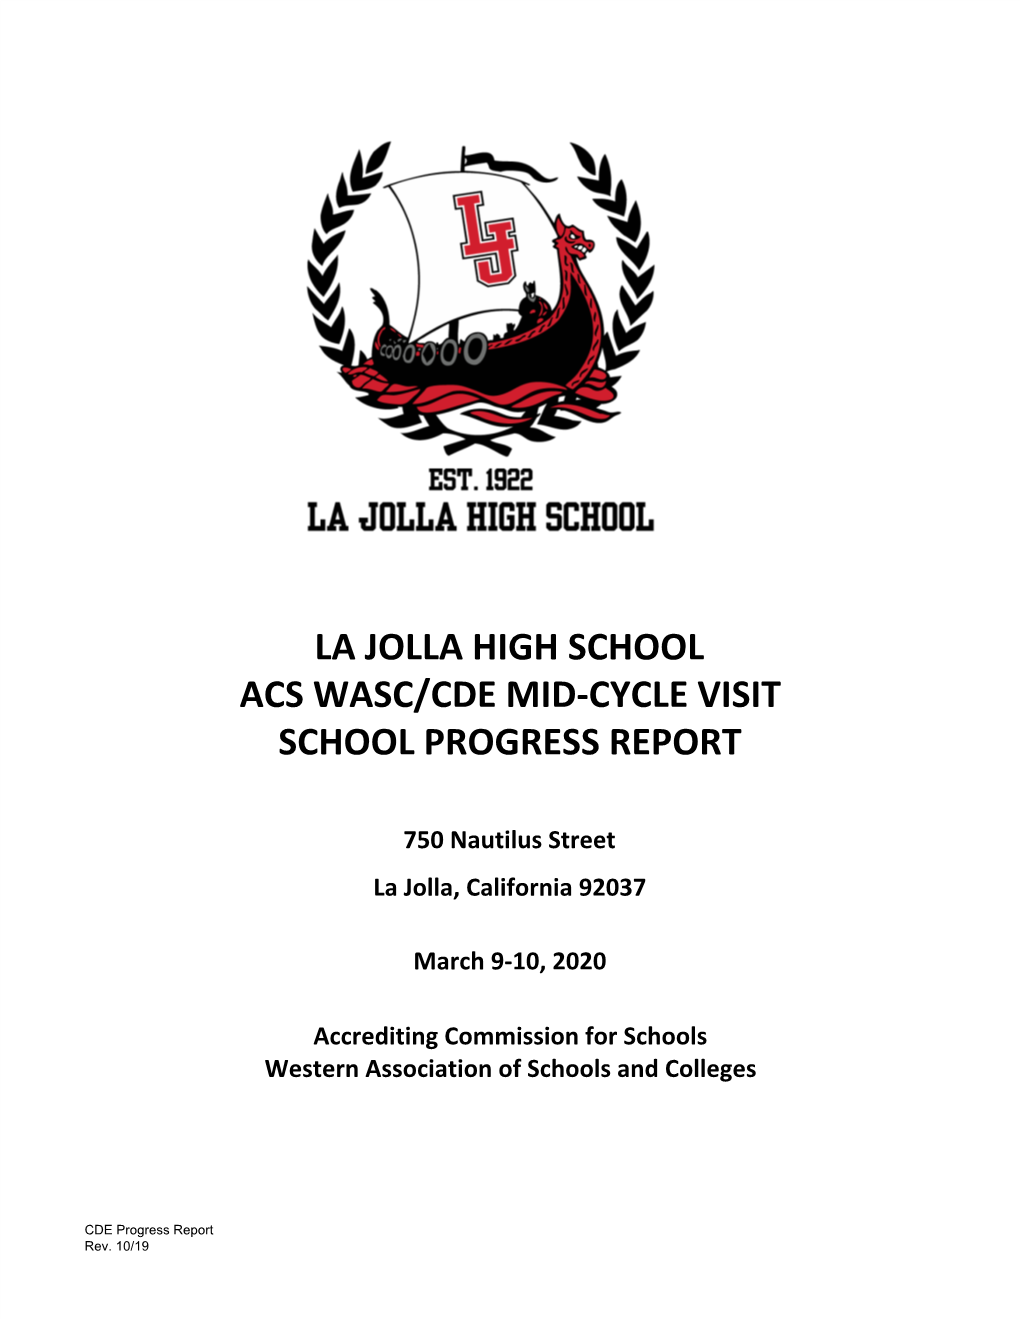 La Jolla High School Acs Wasc/Cde Mid-Cycle Visit School Progress Report